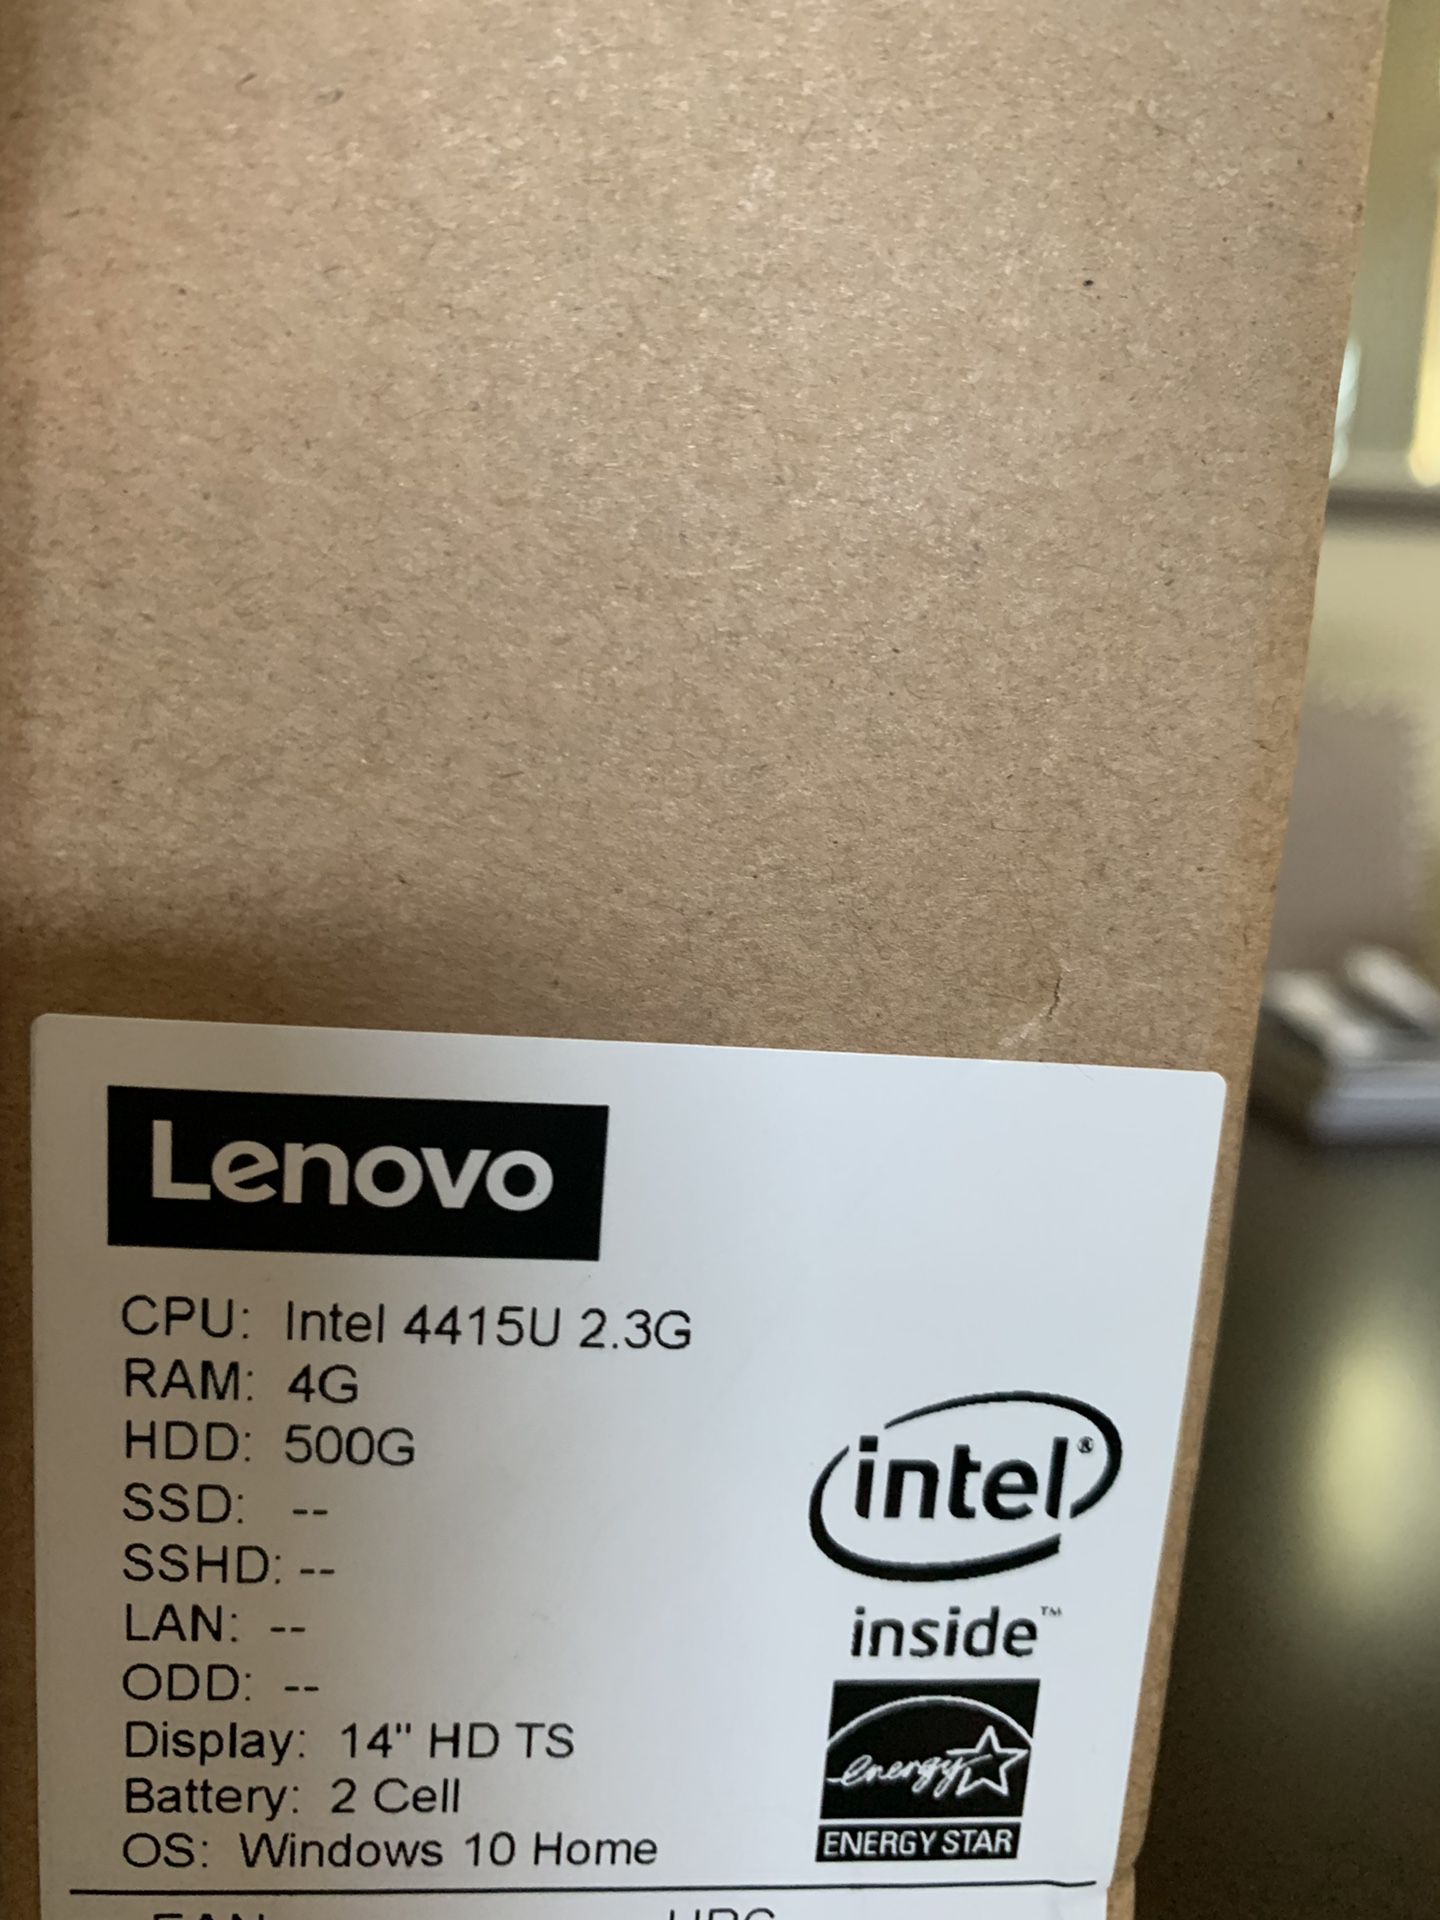 Lenovo Laptop 2in1 $150